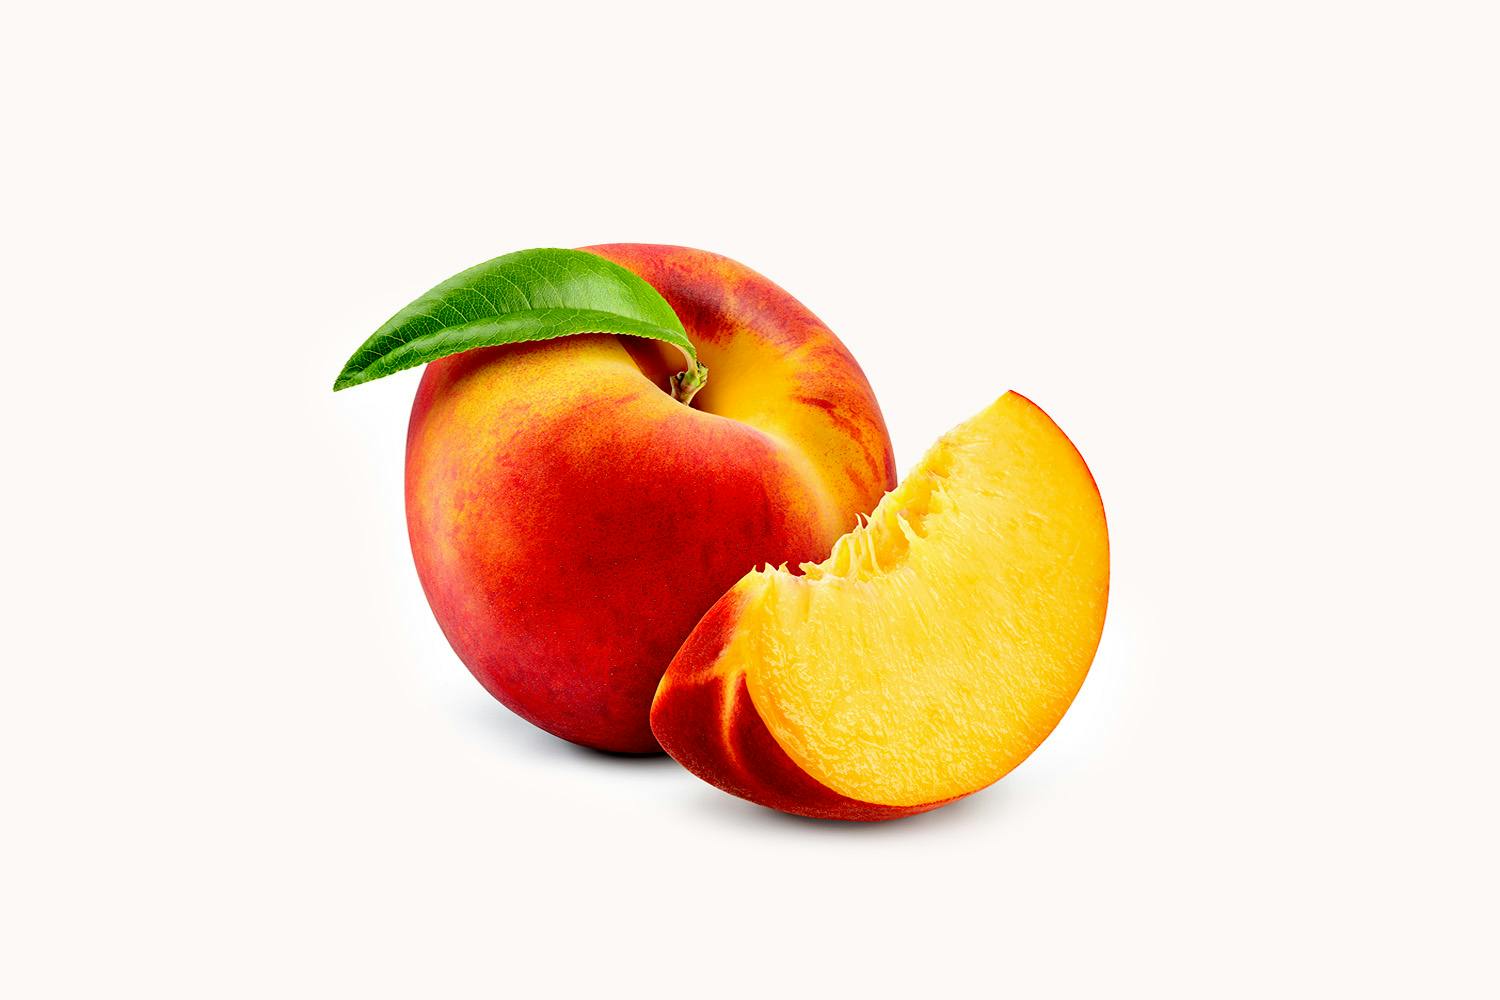 Indian Peach